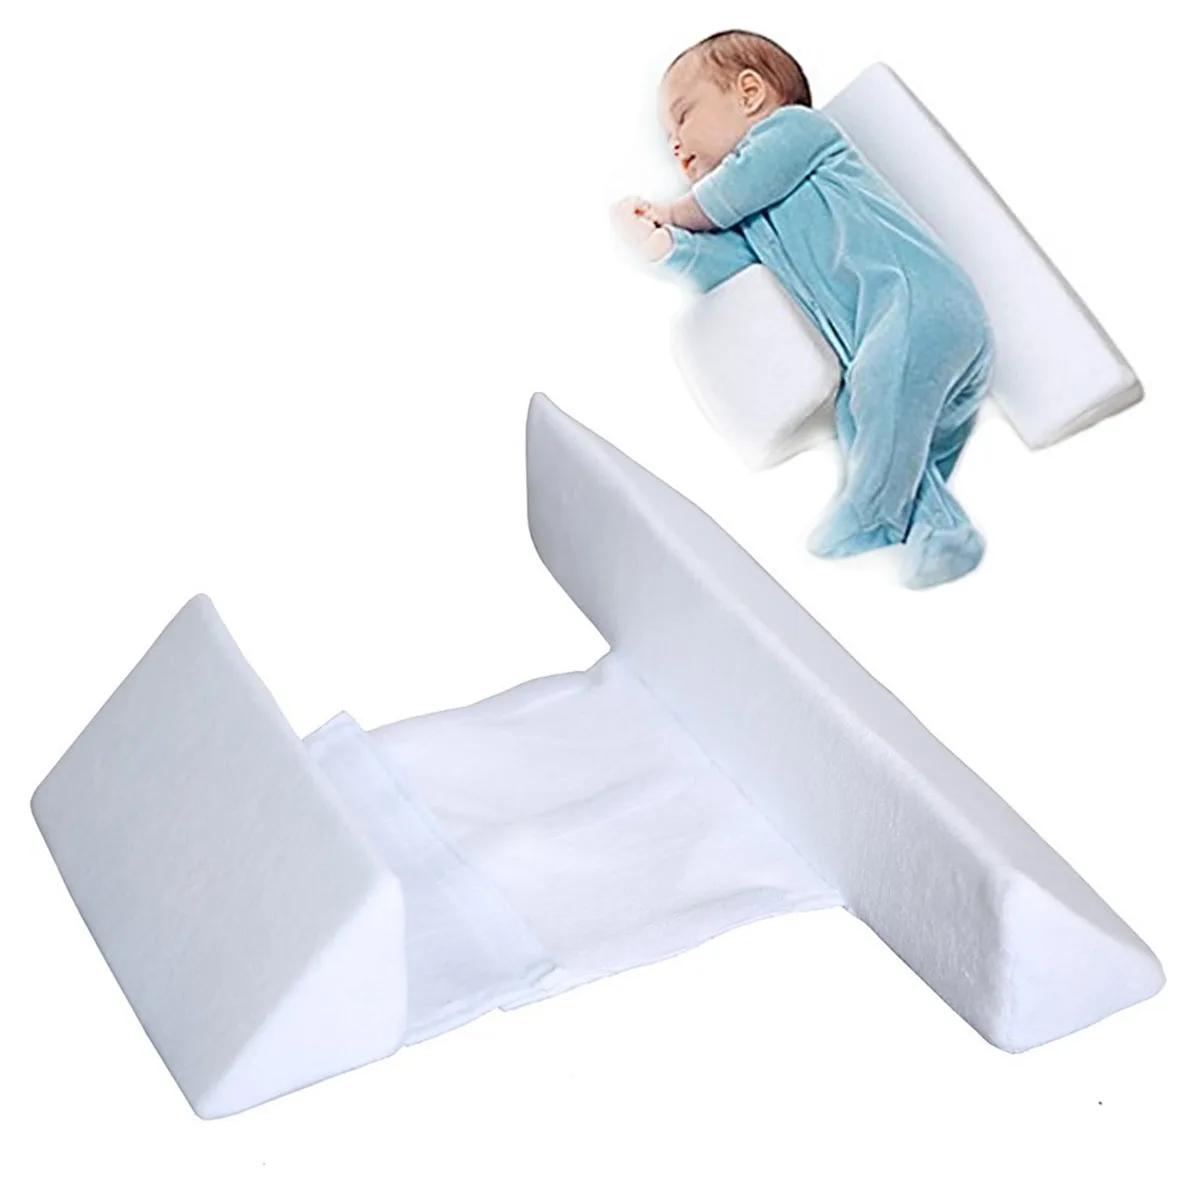 2018 детский гамак, детская кроватка, подвесная кровать, портативная кровать для помещений для новорожденных, гамак, кровать, качели, уличное